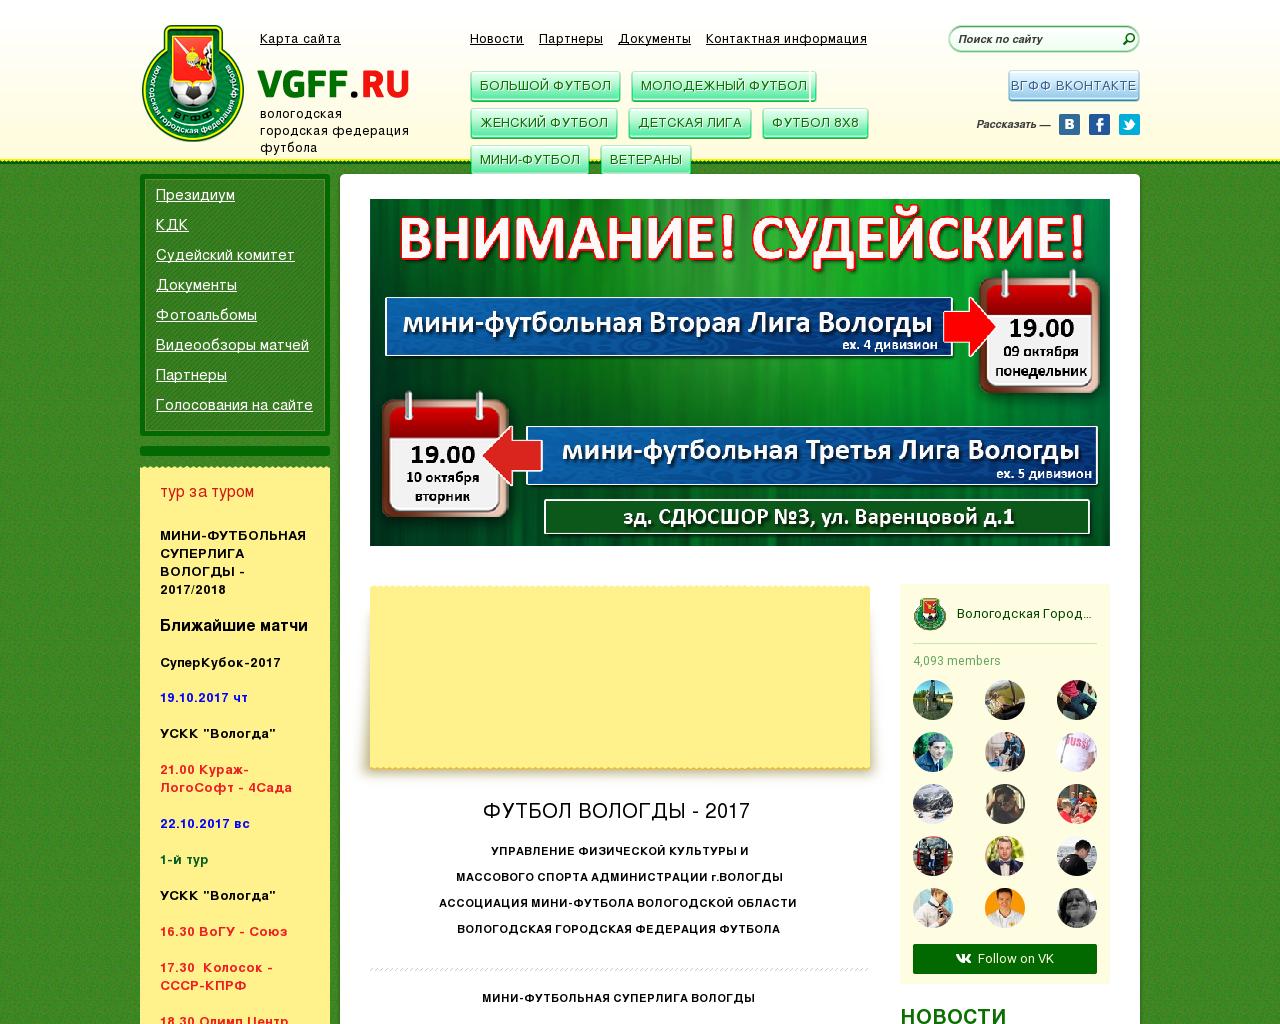 Изображение сайта vgff.ru в разрешении 1280x1024